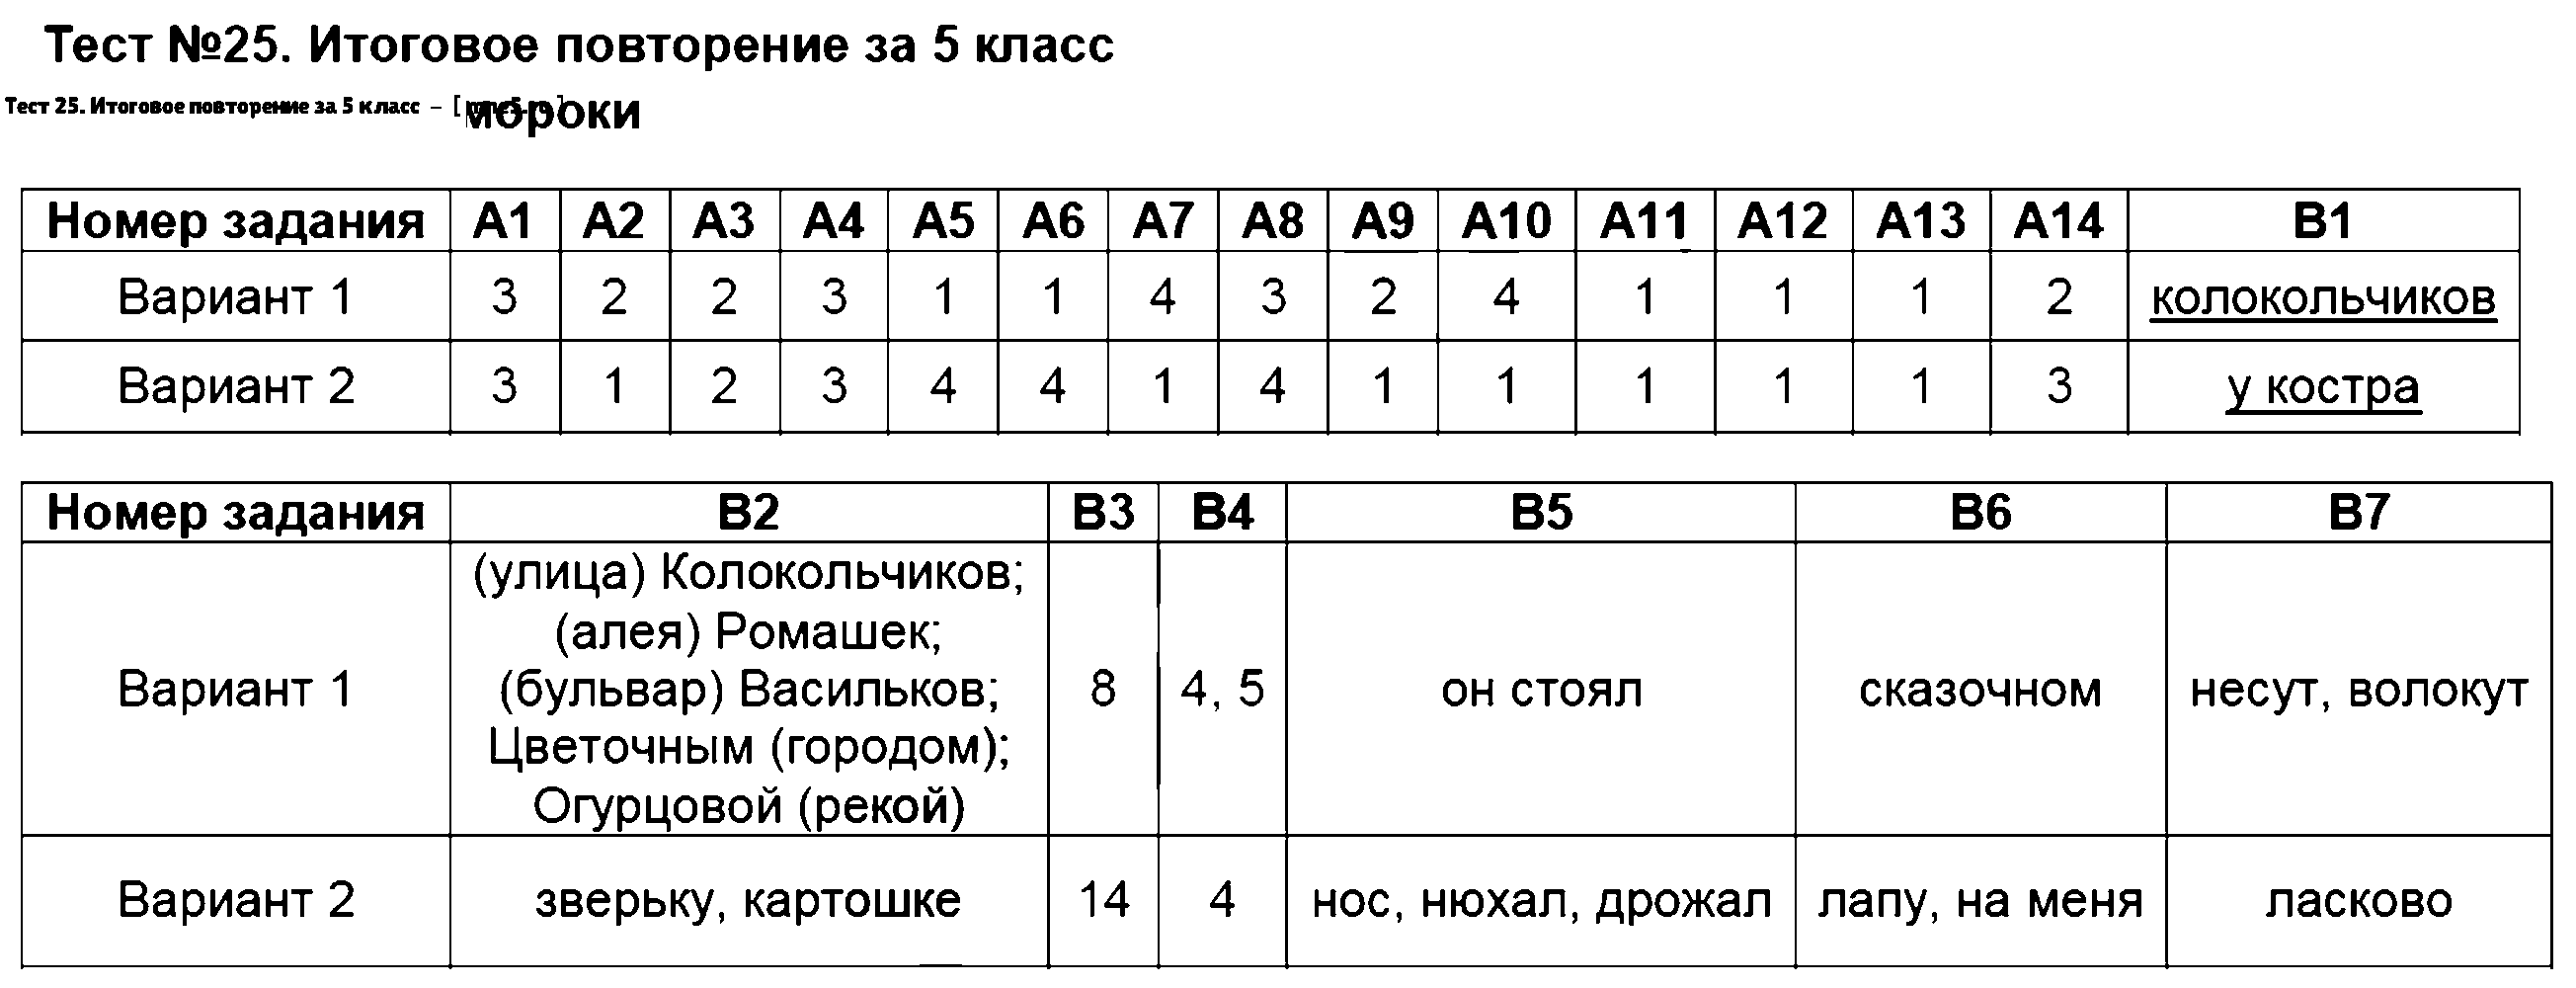 ГДЗ Русский язык 5 класс - Тест 25. Итоговое повторение за 5 класс